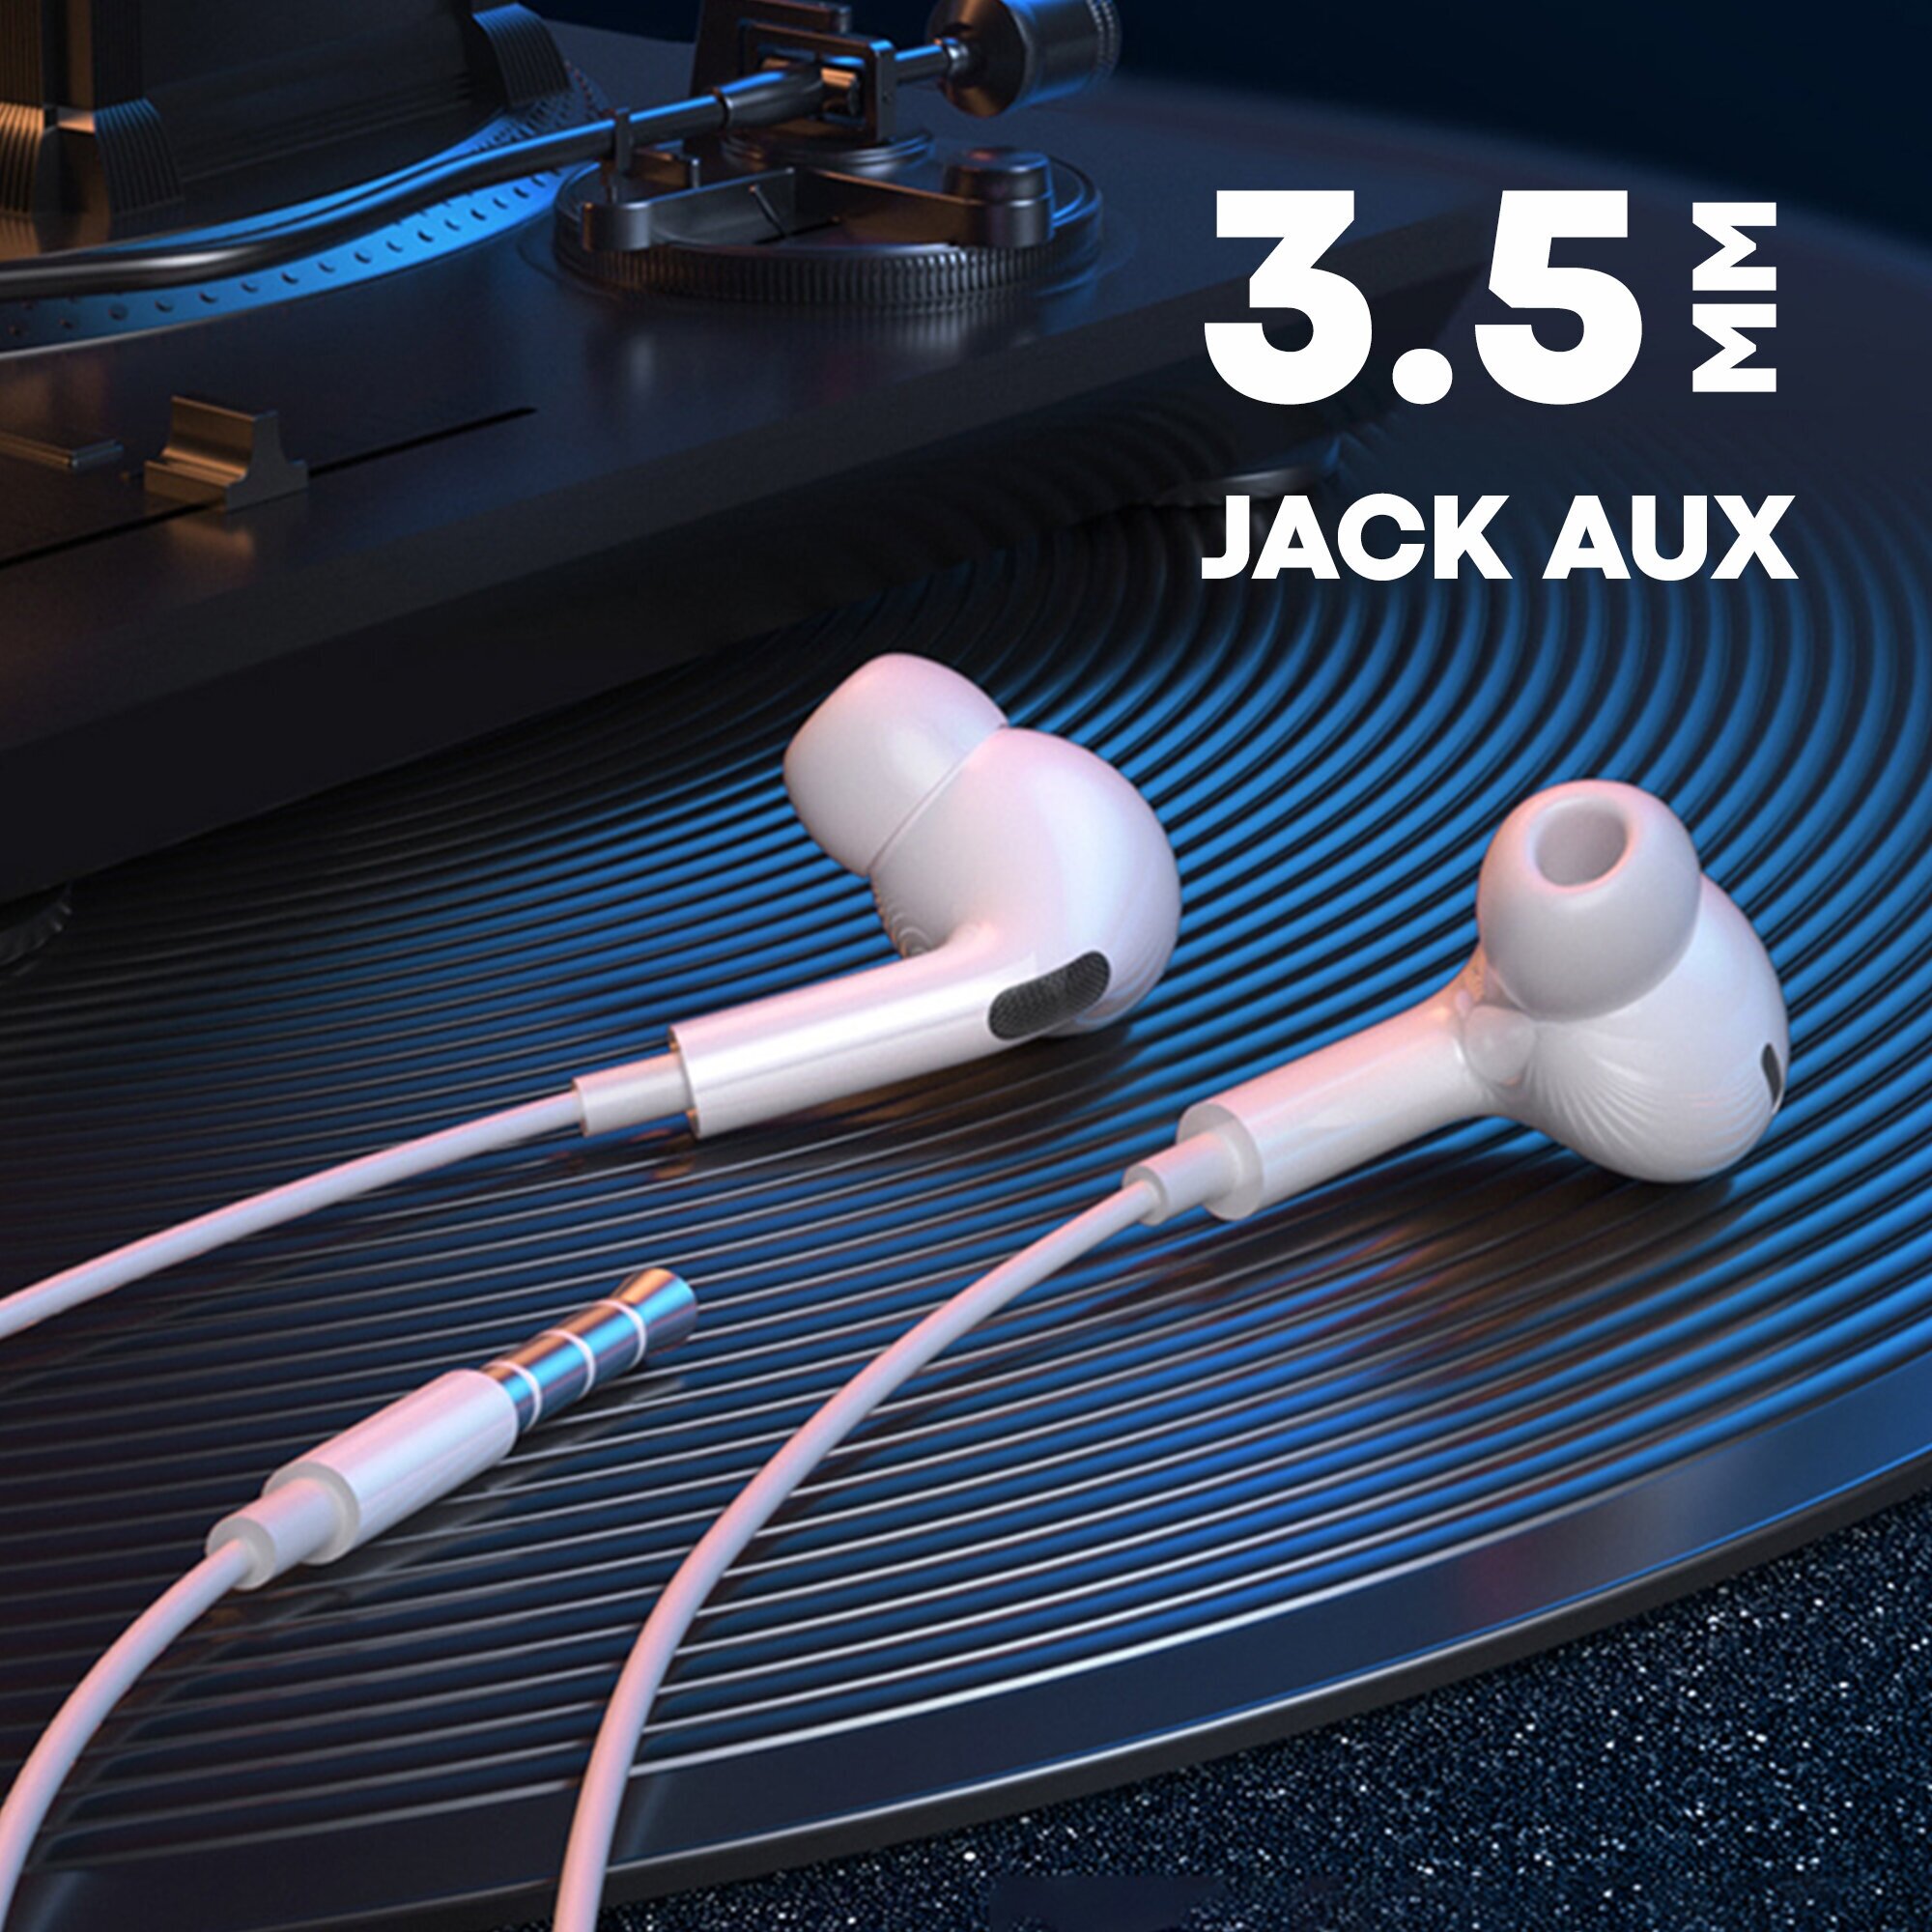 Проводные вукуумные наушники с микрофоном разъем mini JACK AUX AMFOX EARStar 3 игровая гарнитура для компьютера телефона и пк на Android белые